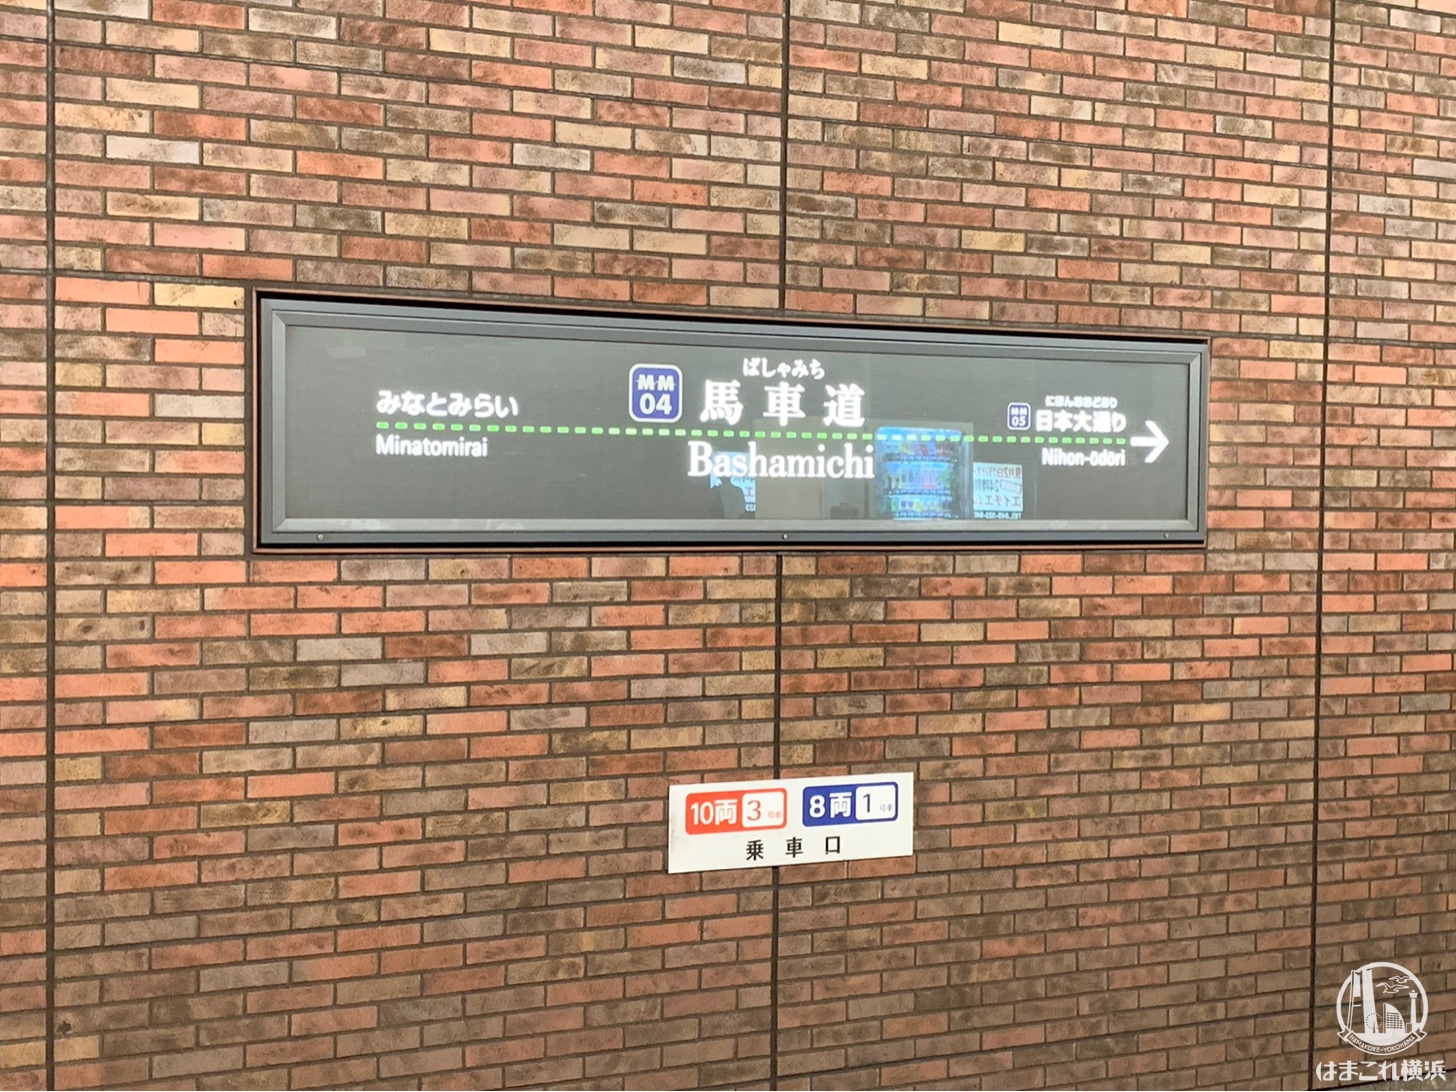 馬車道駅に副駅名「横浜市役所」が2020年に追加